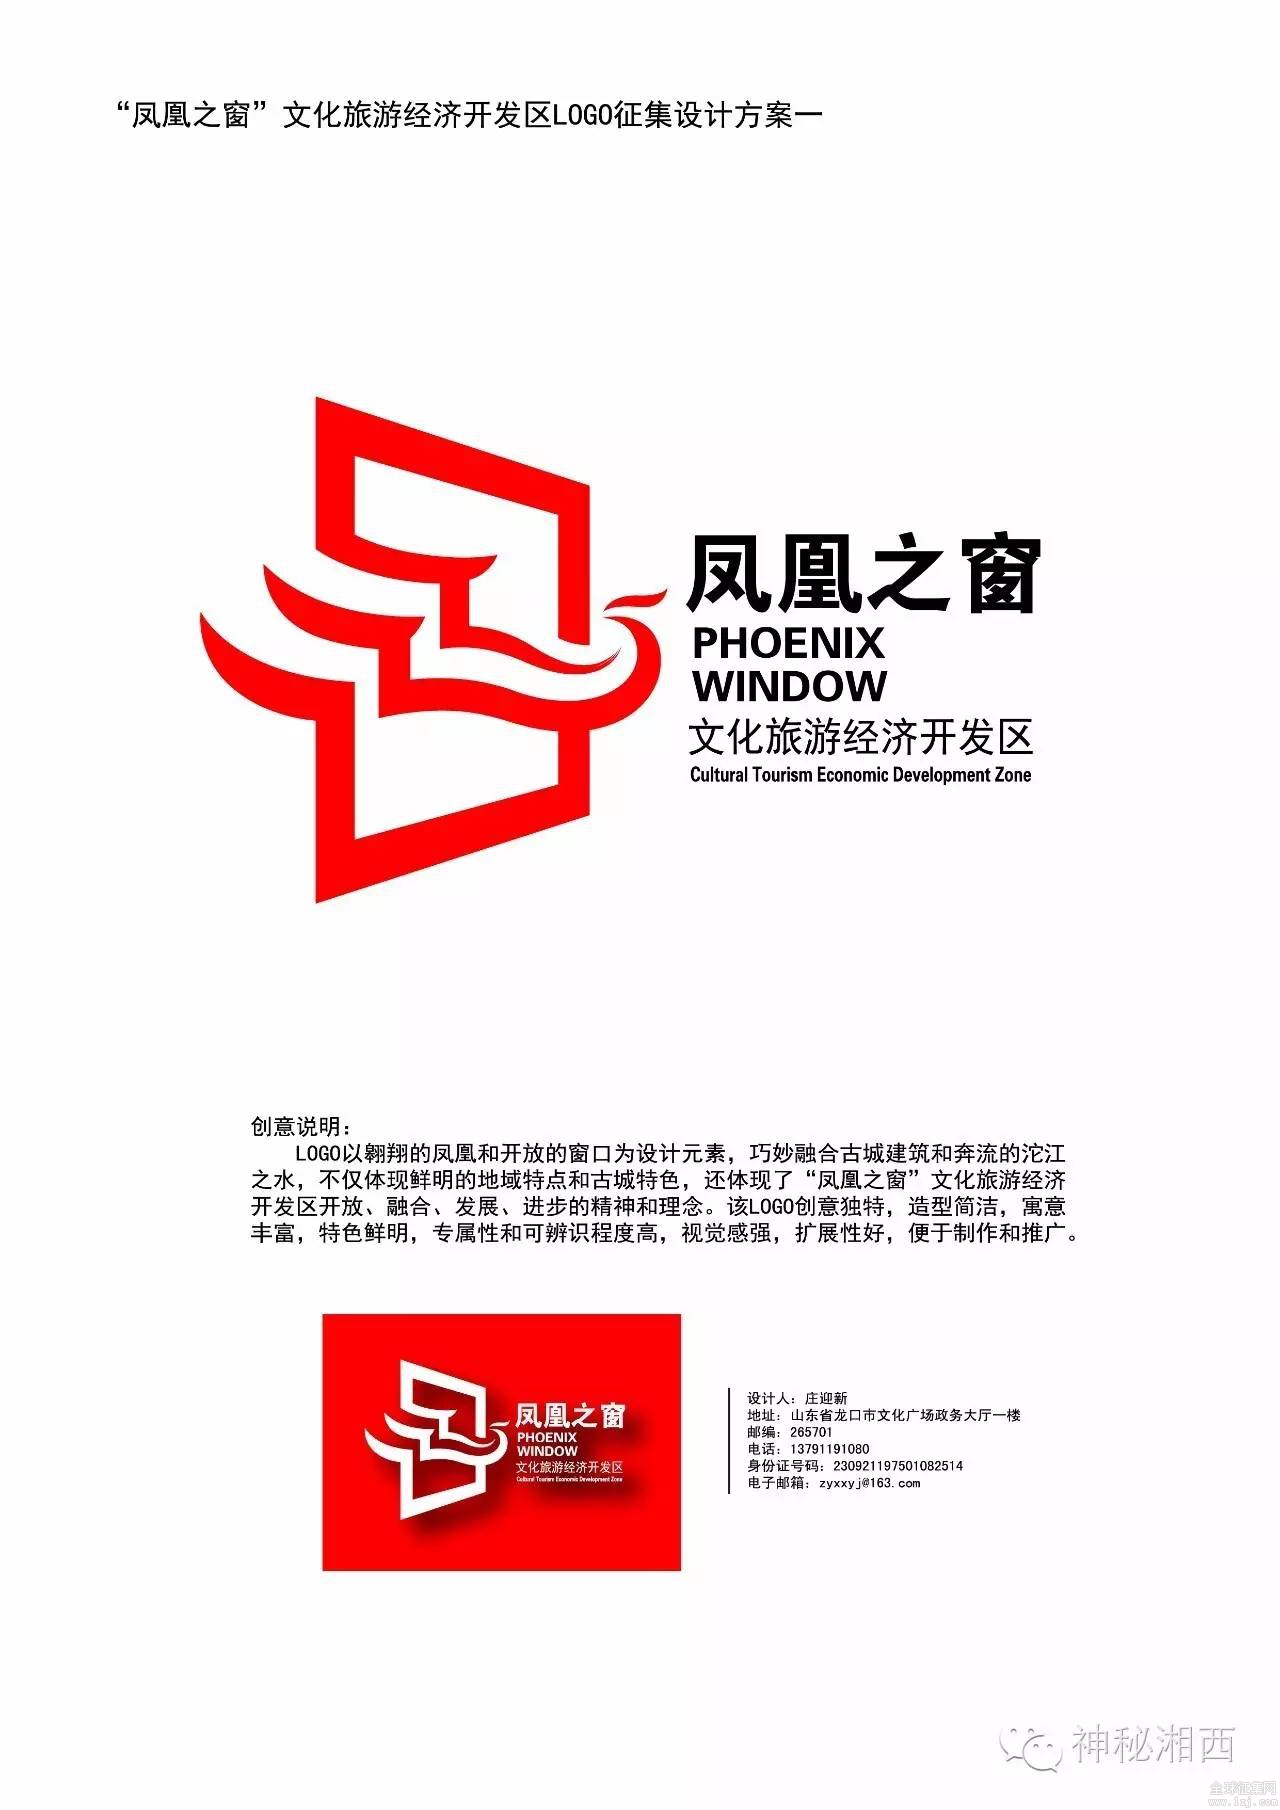 凤凰之窗文化旅游产业园logo,宣传语征集揭晓